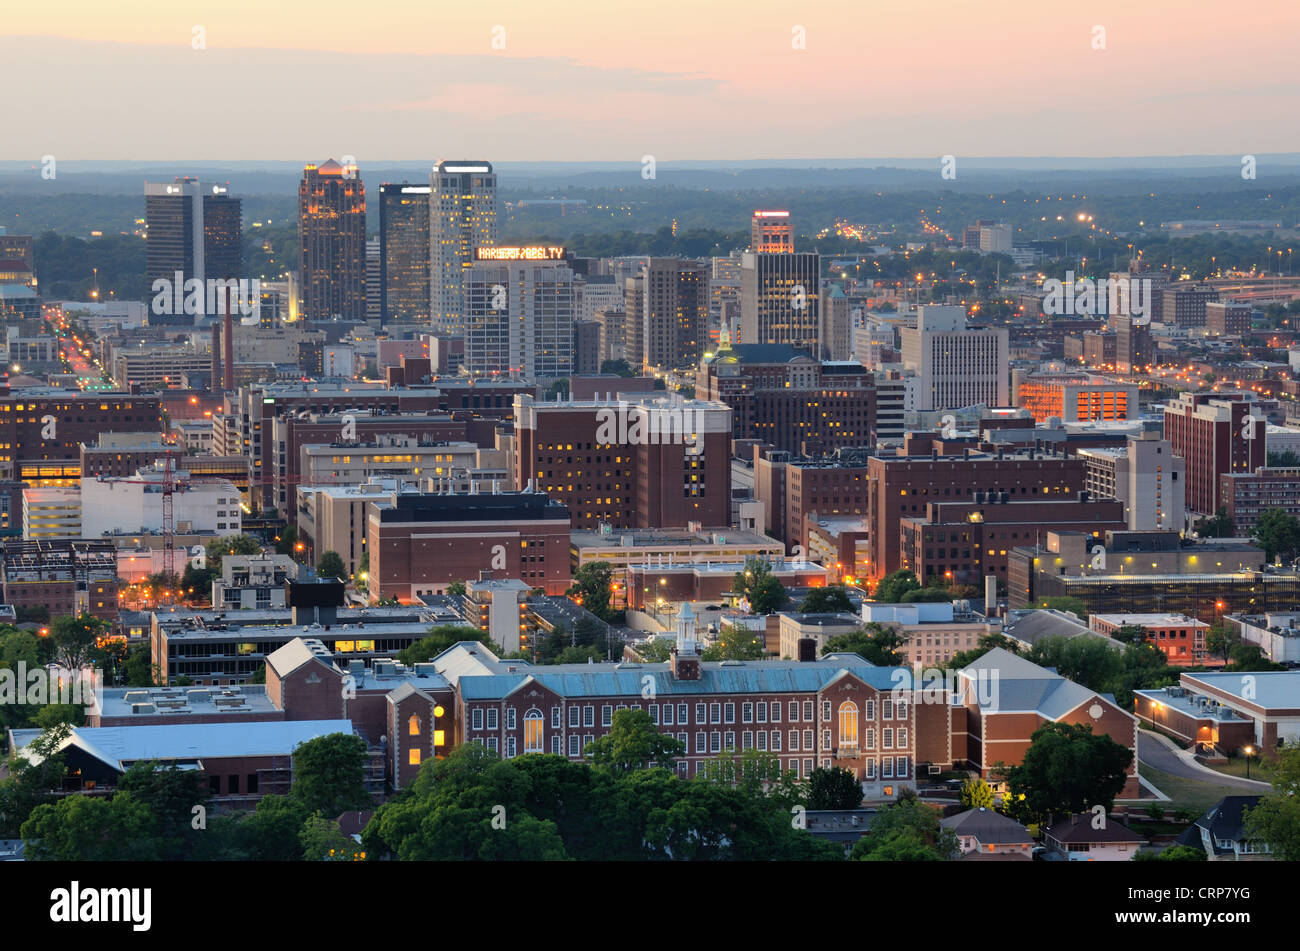 Skyline du centre-ville de Birmingham, Alabama, USA. Banque D'Images